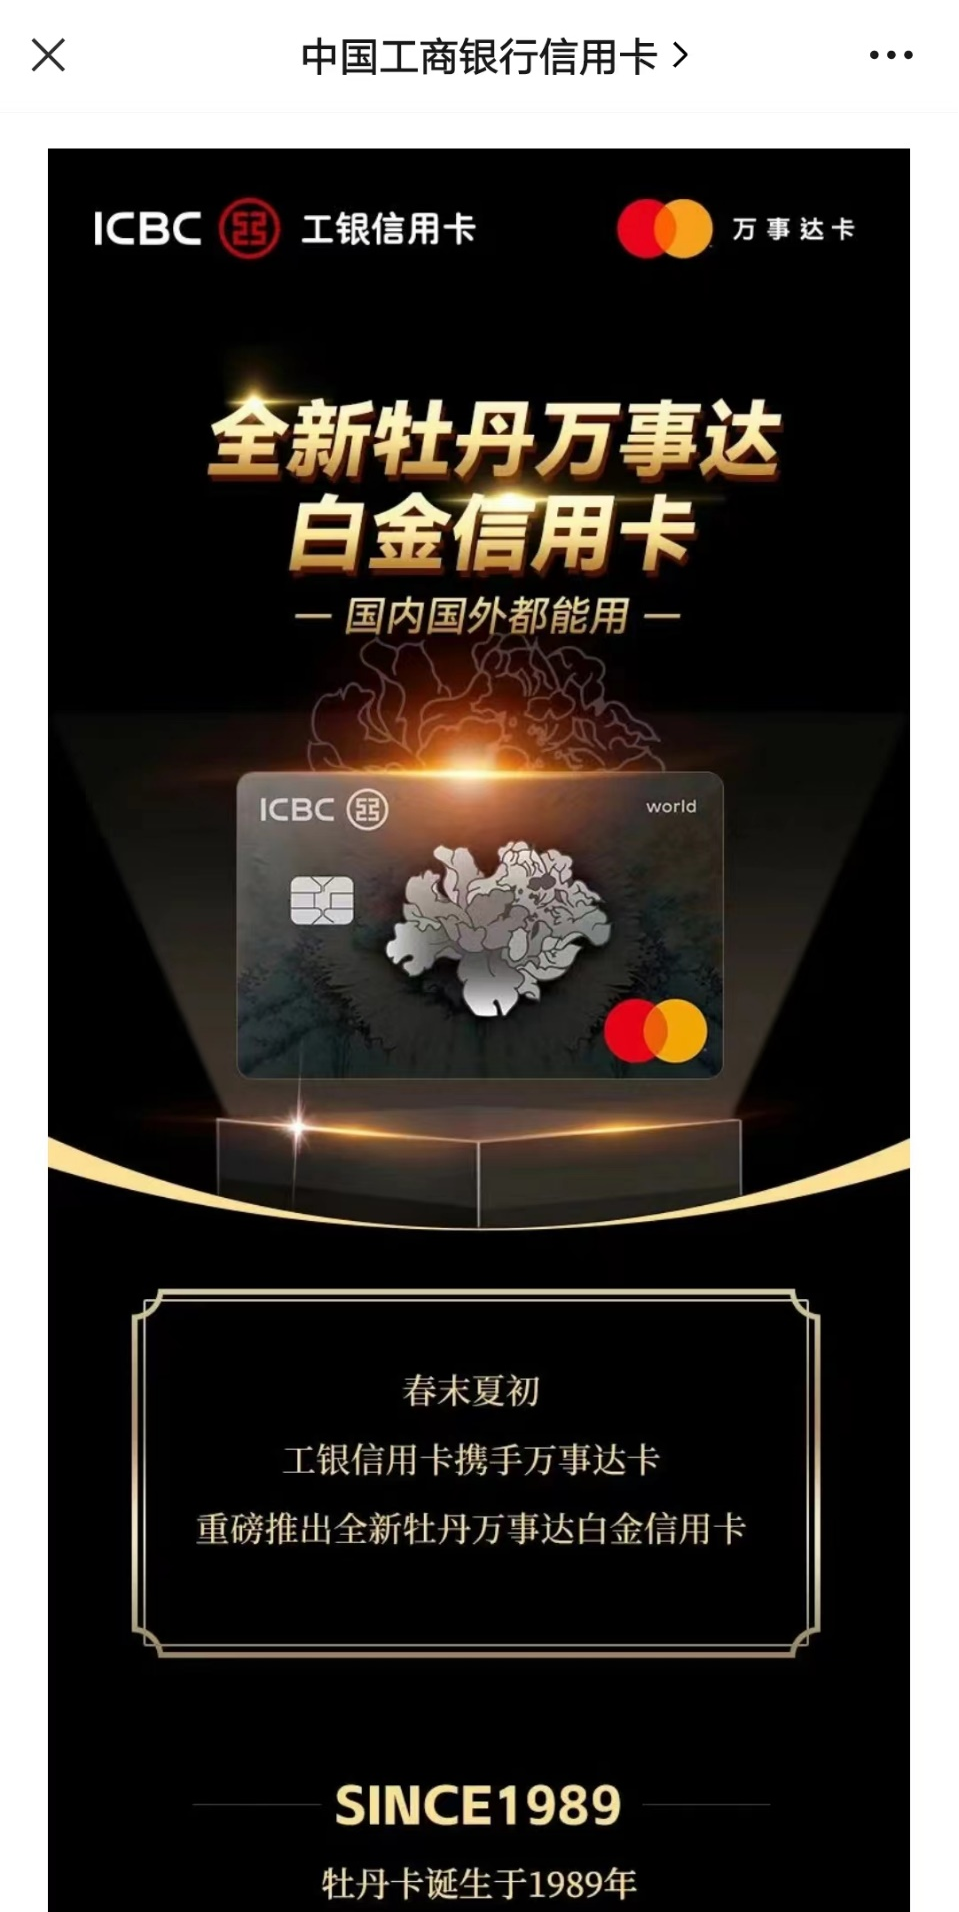 图片来源：中国工商银行信用卡微信公众号